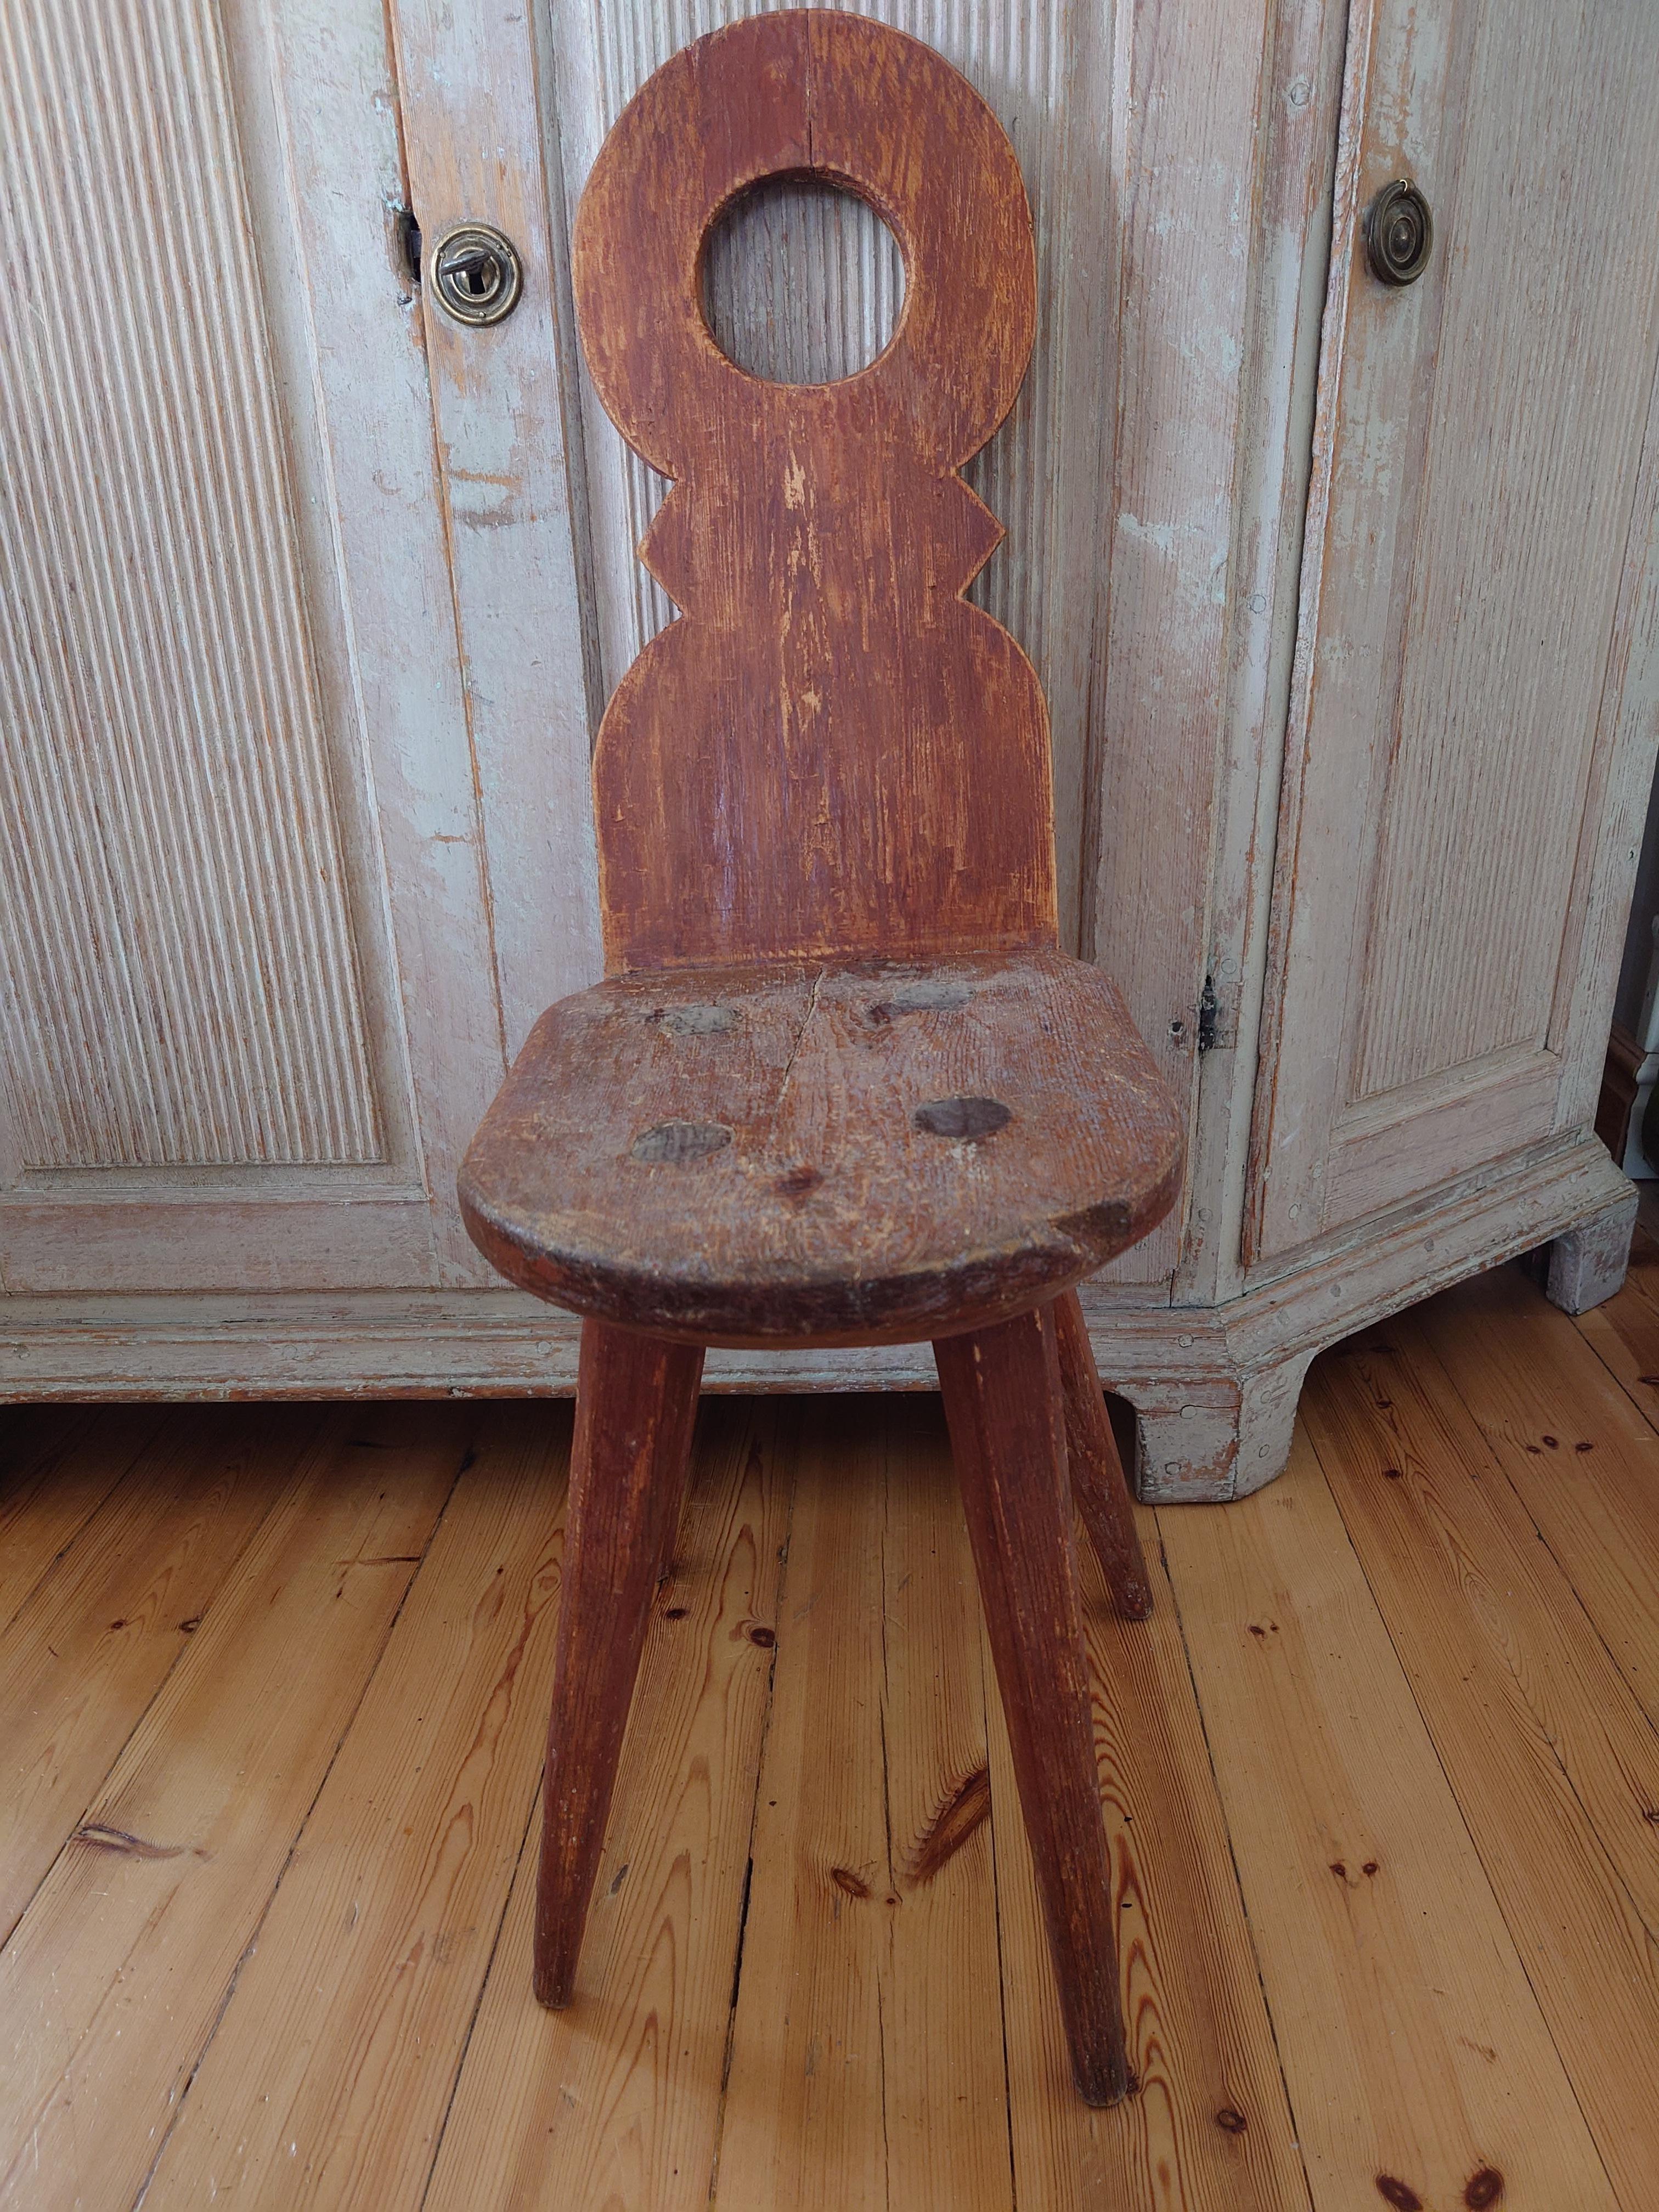 Schwedischer Landhausstil-Stuhl aus Nordschweden, Ende des 18.

Dieser charmante Stuhl ist ein echtes Stück Geschichte. Es wurde um 1850 in Nordschweden in Handarbeit hergestellt.
Der Stuhl ist ein charmantes, primitives Modell, das von Hand aus